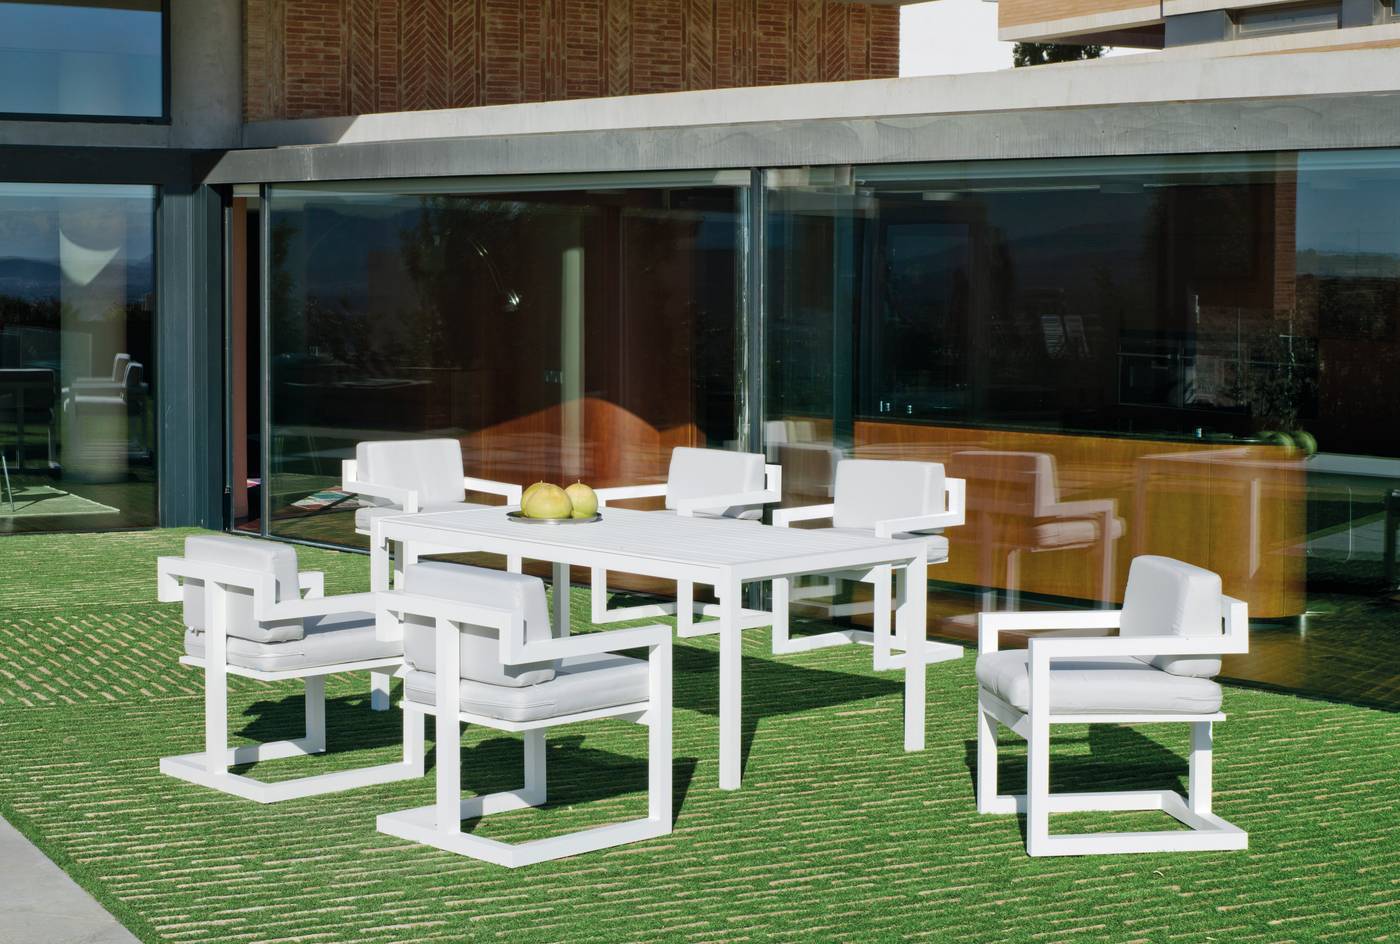 Sillón Aluminio Alhama-30 - Sillón comedor para jardín o terraza. Estructura, asiento y respaldo de aluminio